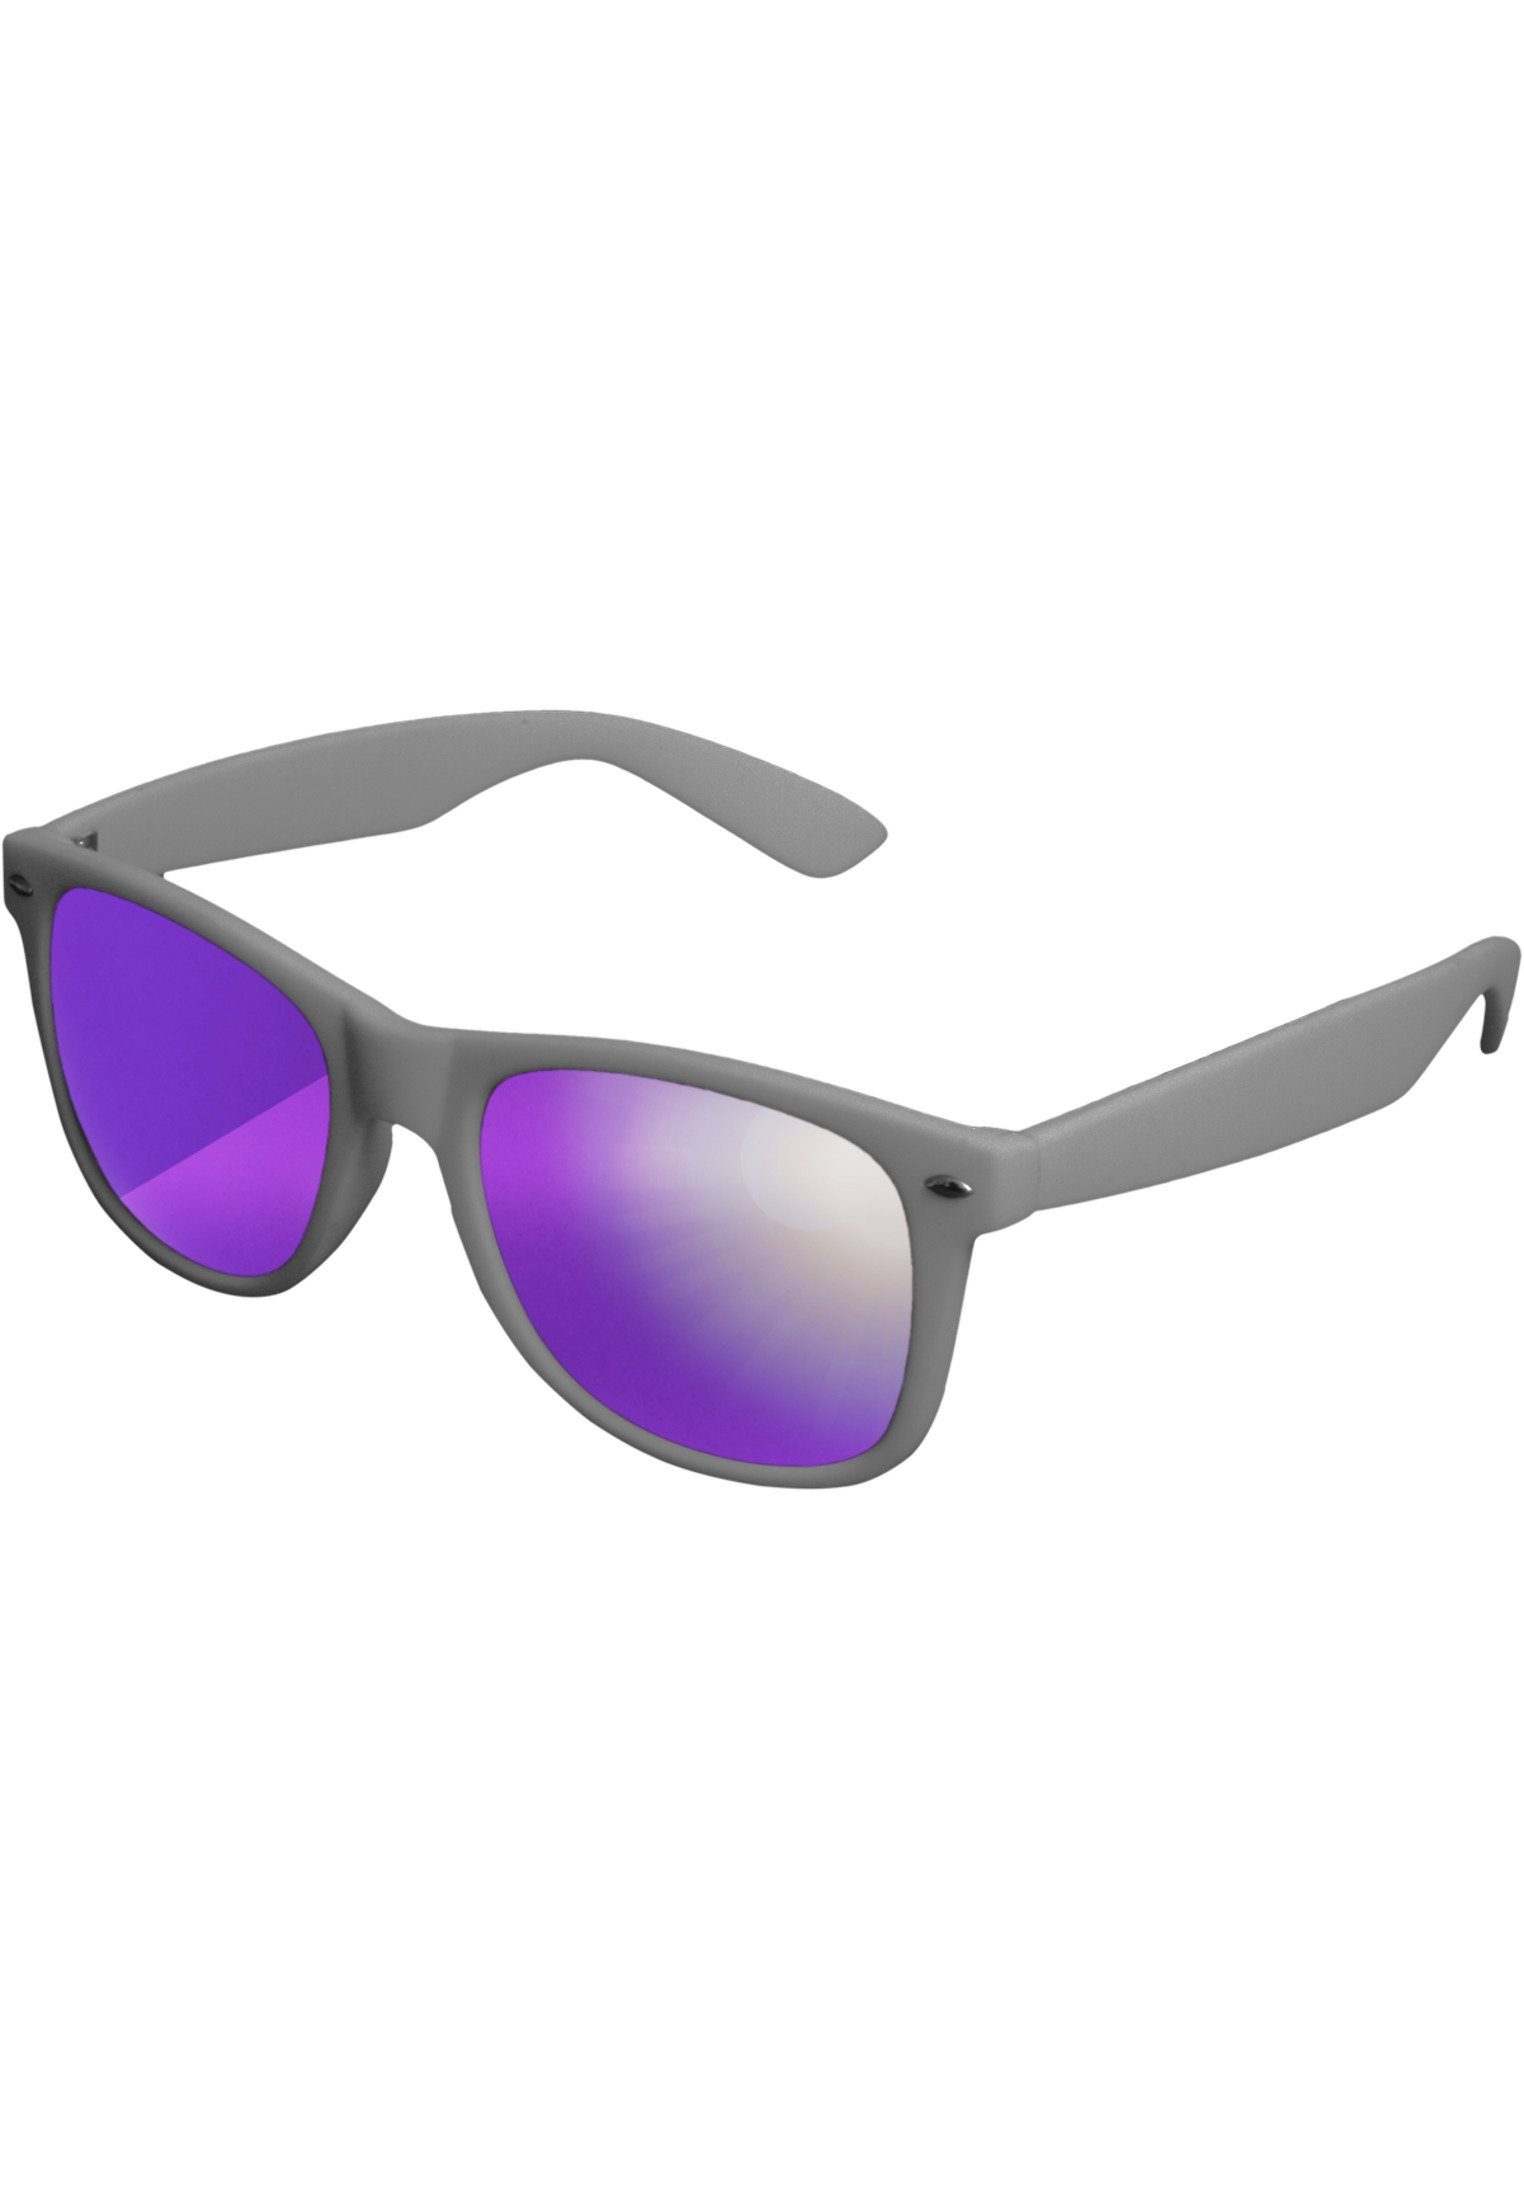 MSTRDS Sonnenbrille Accessoires Sunglasses Likoma Mirror, Ideal auch für  Sport im Freien geeignet